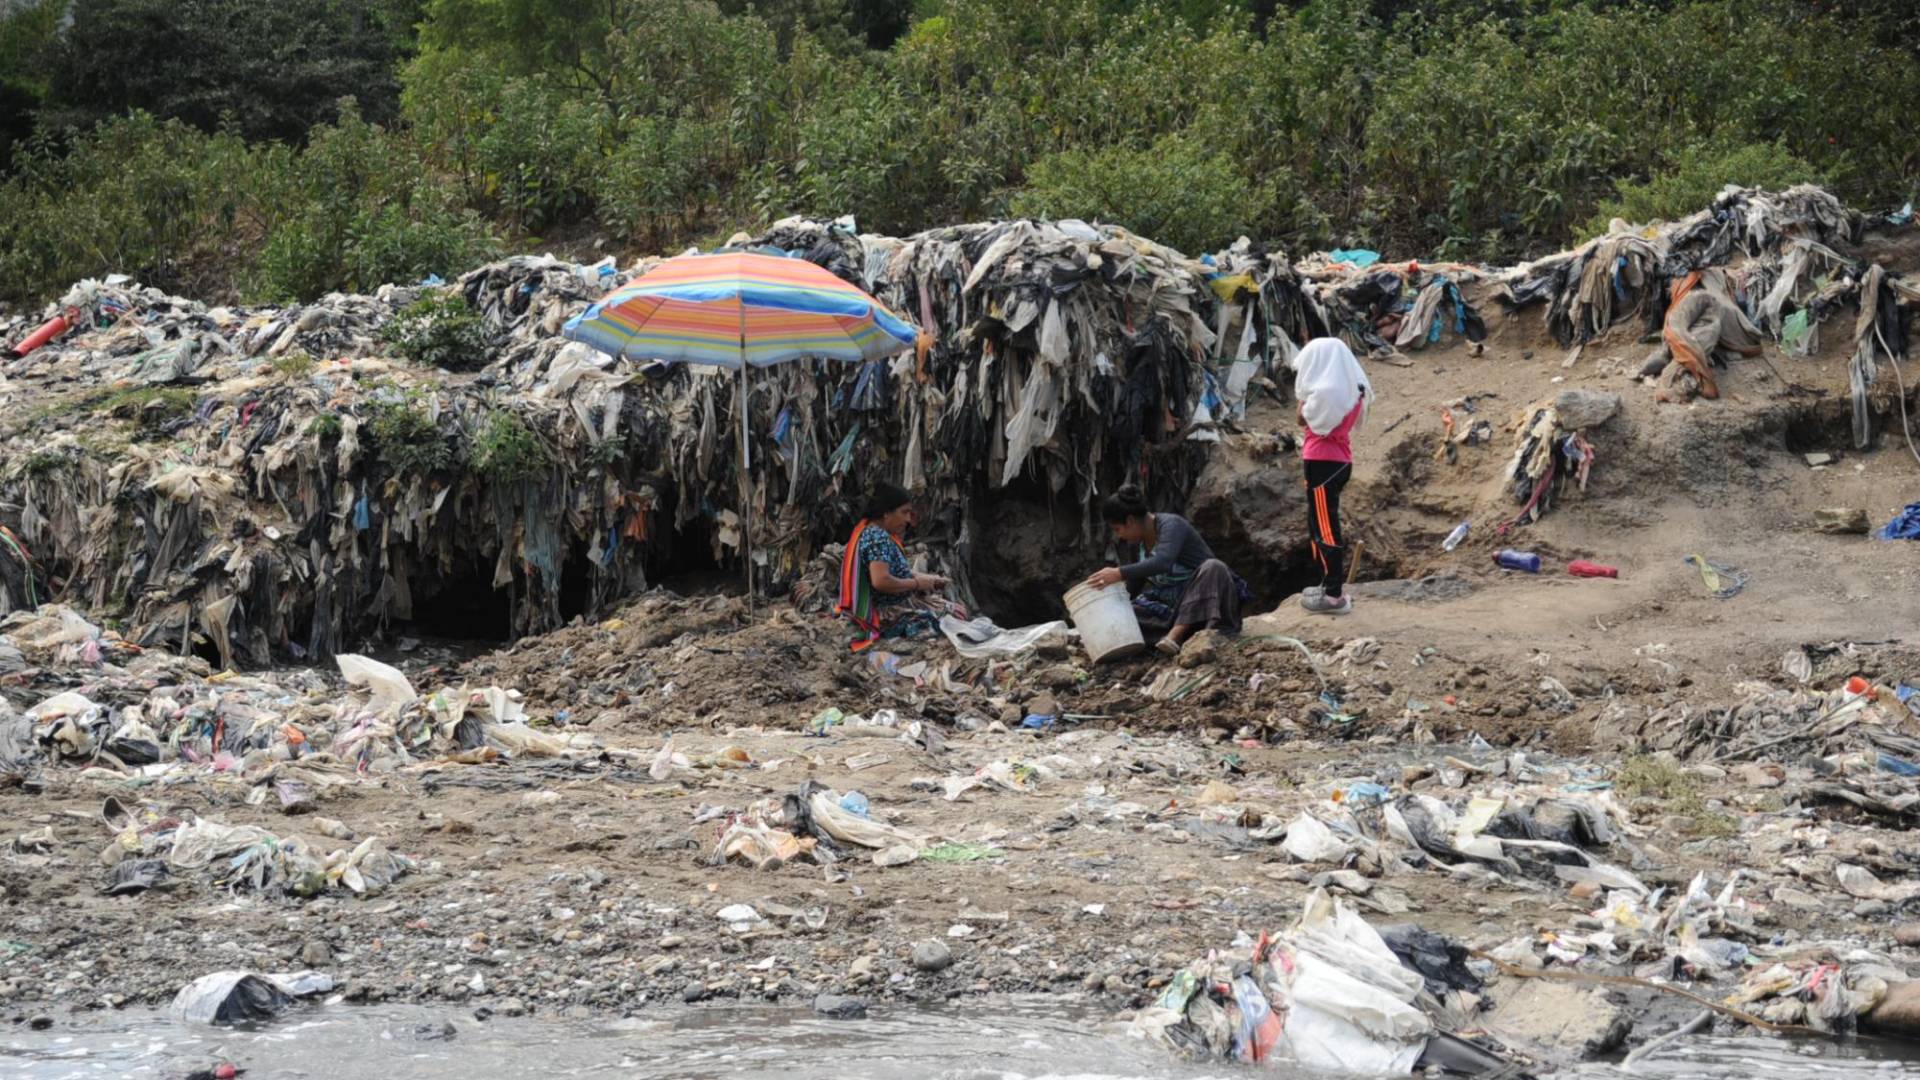 $!Las personas en Santa Cruz de Chinautla viven de la venta de artesanías. La tierra sale del río, pero con la basura que se queda bajo la tierra es cada vez más difícil conseguir material.